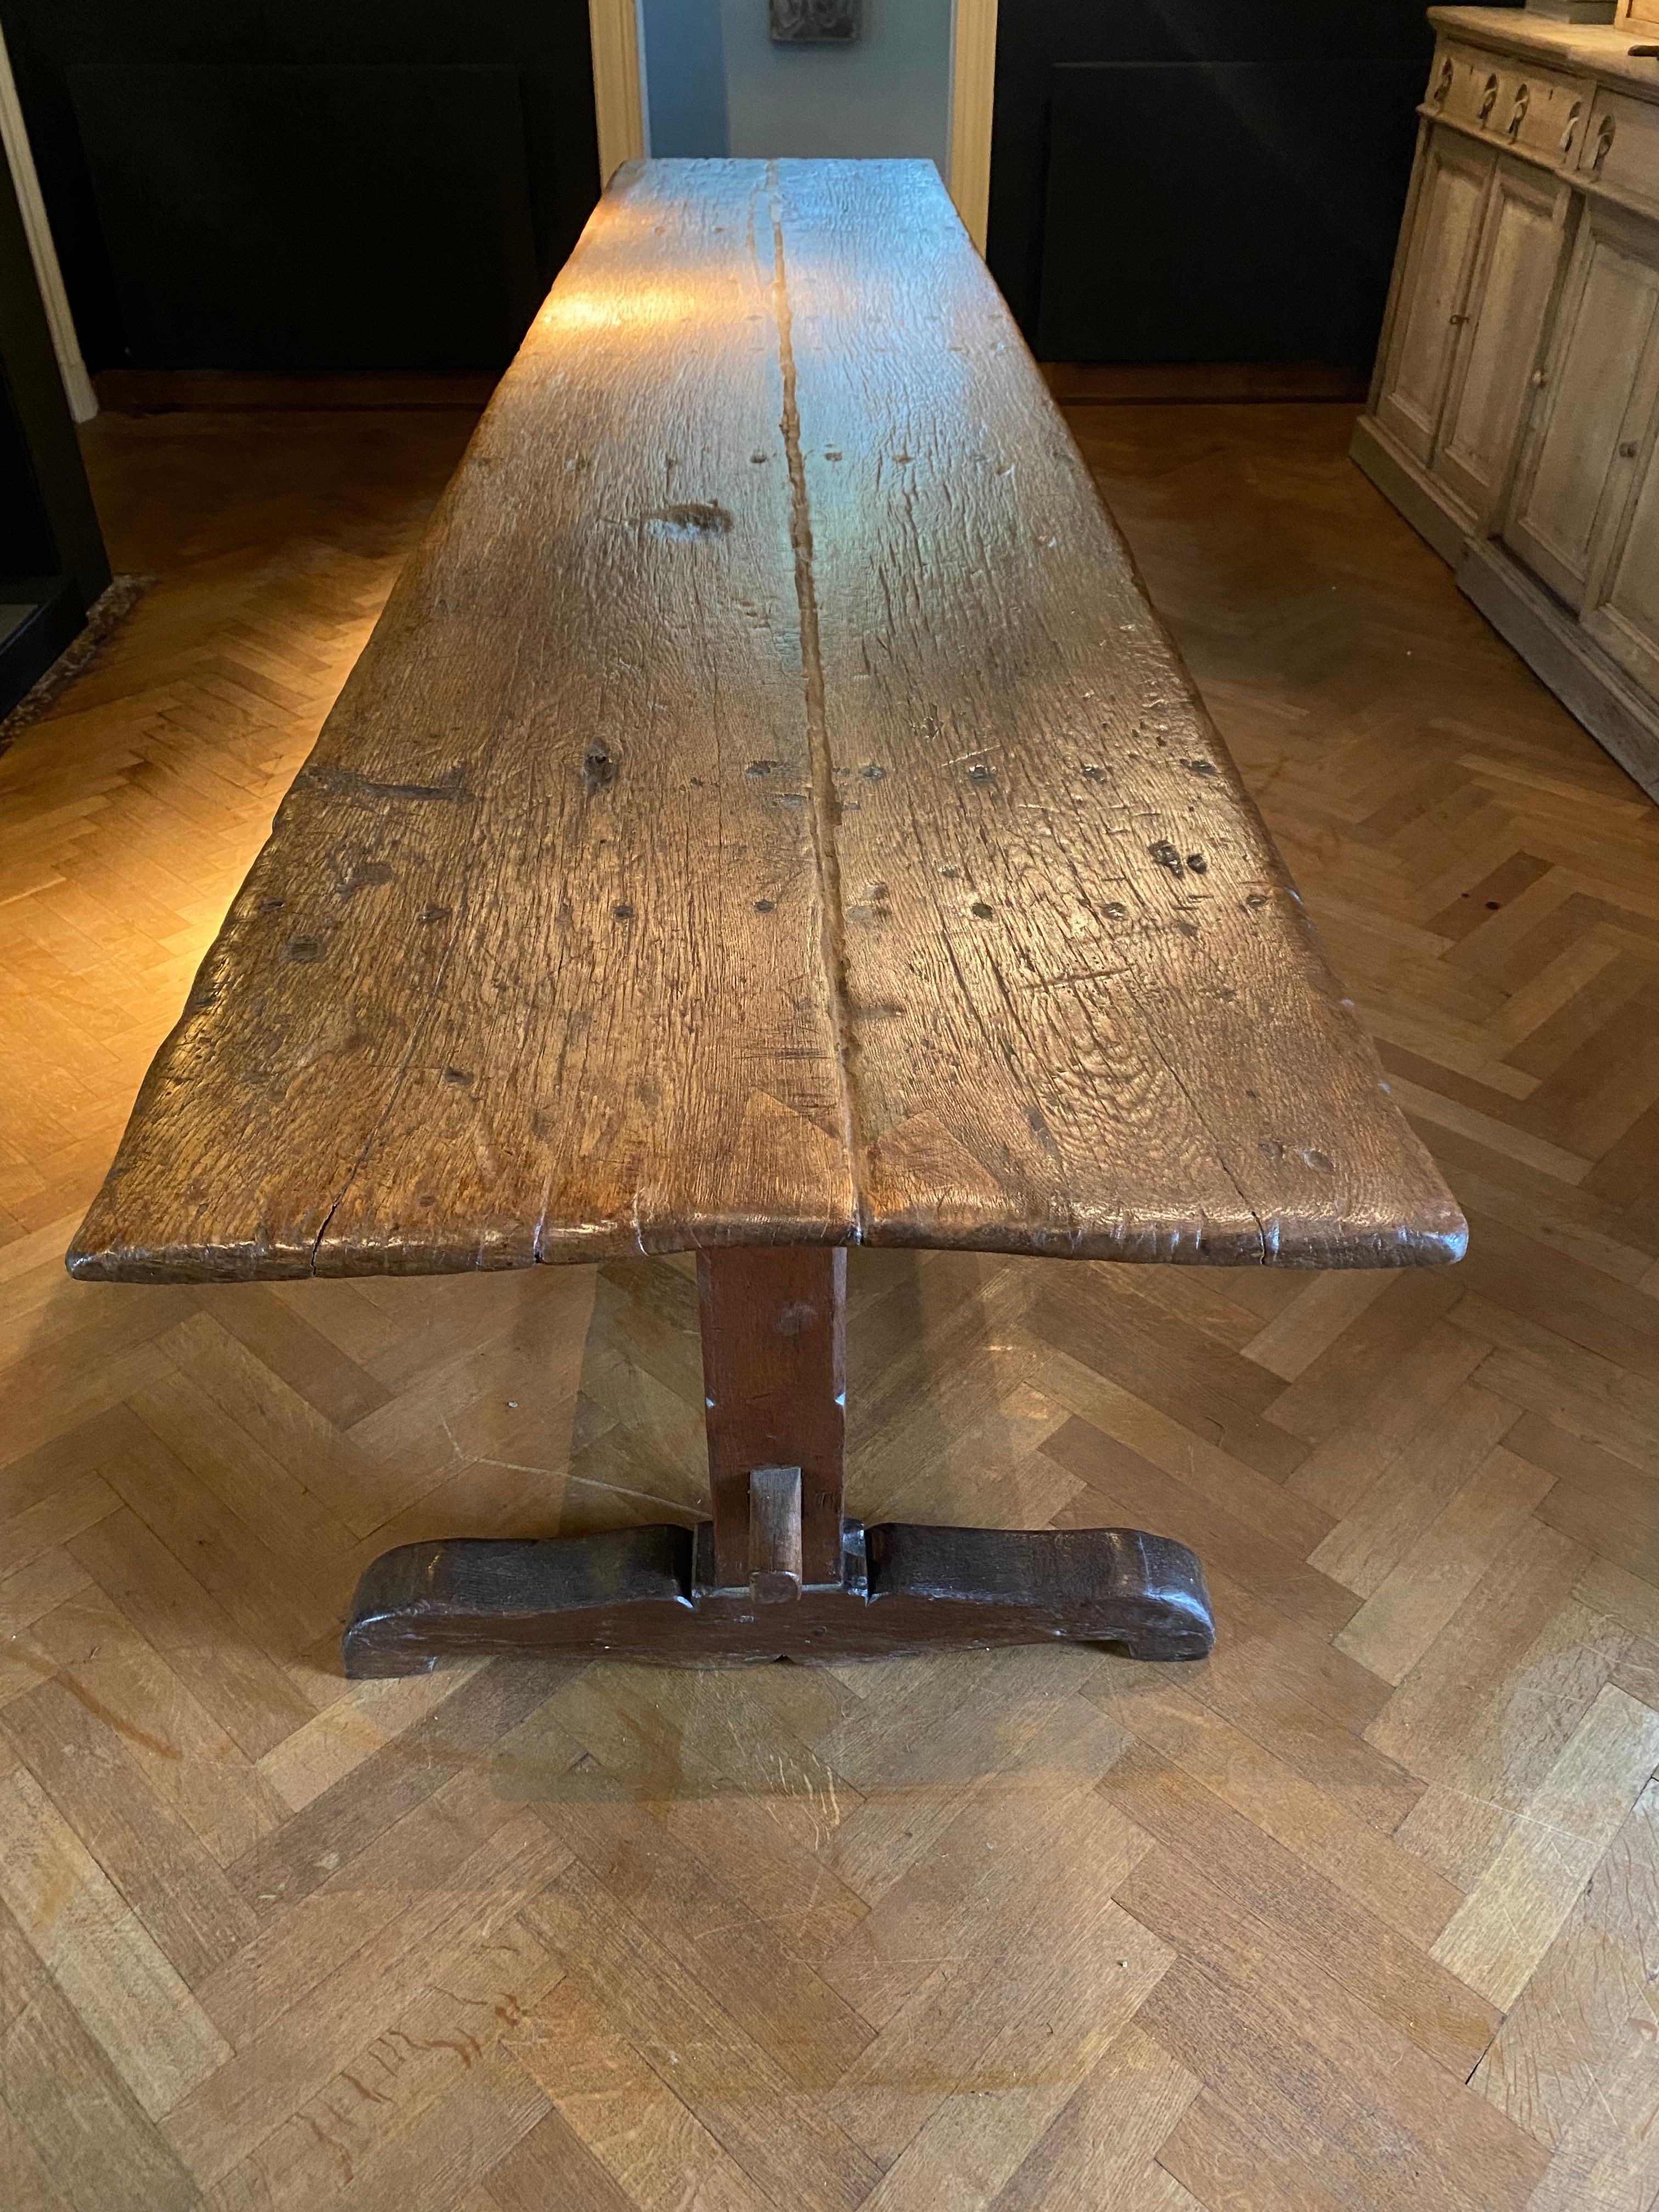 Exceptionnelle table de couvent brutaliste et ancienne d'Italie,
Région de Toscane, fin du 18e siècle,
la table a une belle patine ancienne et le brillant du chêne,
les 3 pieds ont une patine brune,
table très élégante et décorative,
peuvent être